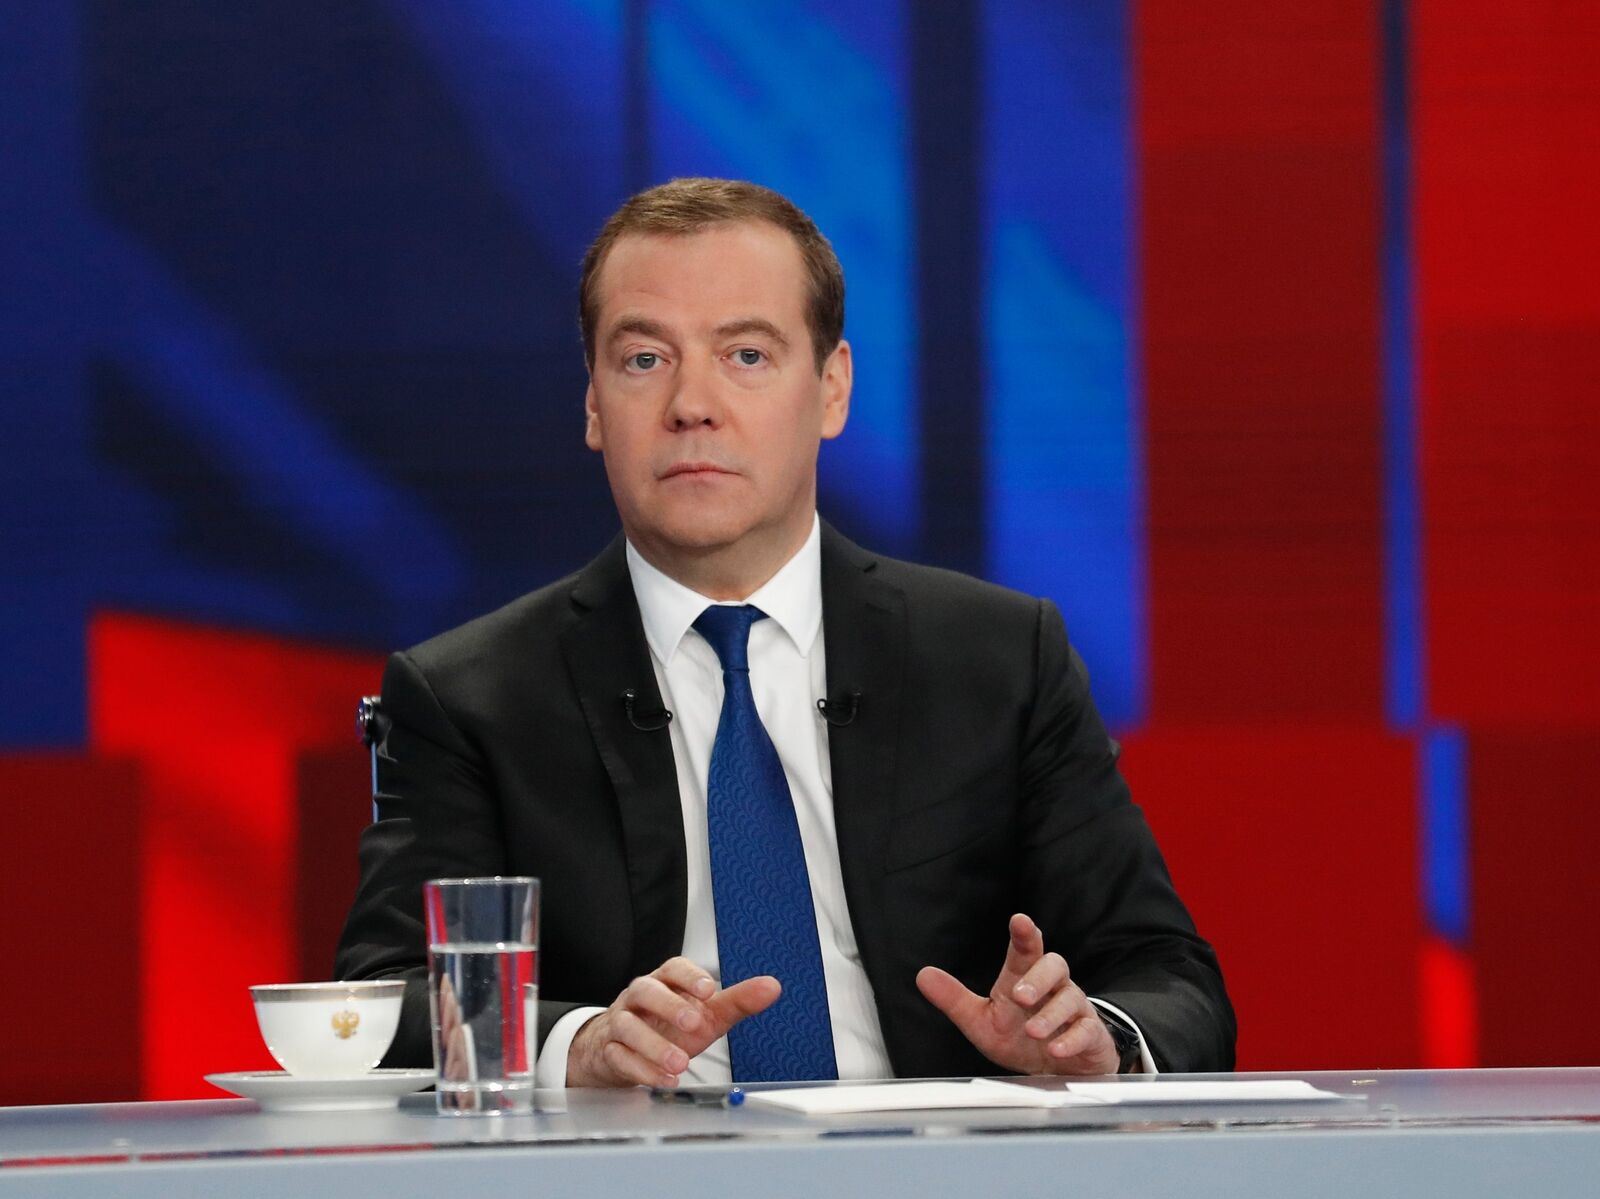 Интервью премьер министра. Медведев председатель правительства РФ.